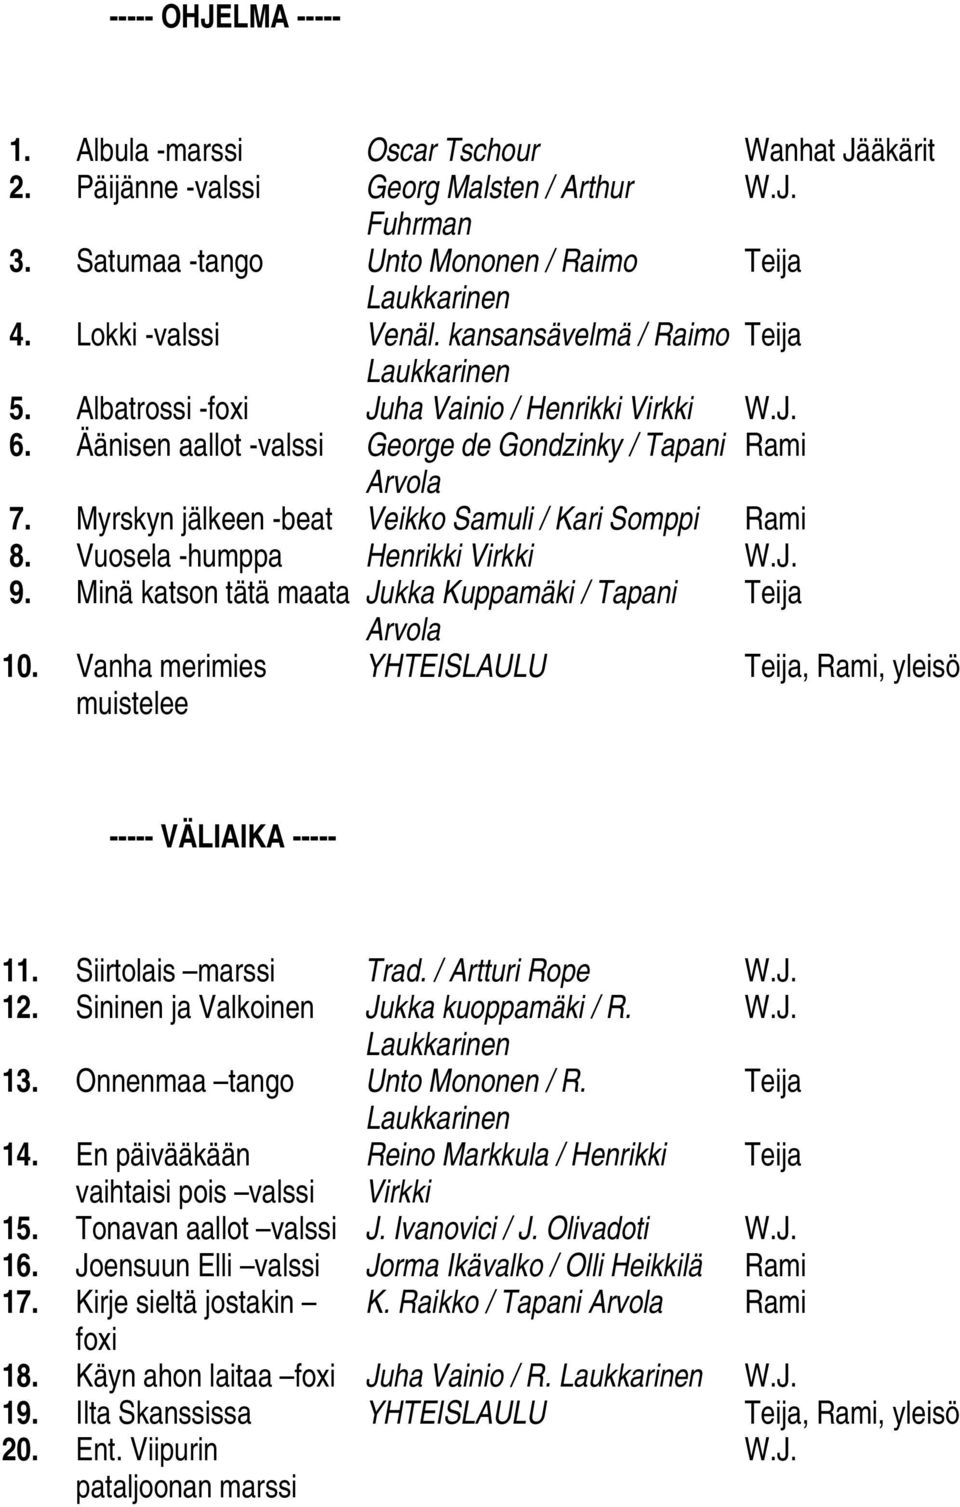 Myrskyn jälkeen -beat Veikko Samuli / Kari Somppi Rami 8. Vuosela -humppa Henrikki Virkki W.J. 9. Minä katson tätä maata Jukka Kuppamäki / Tapani Teija Arvola 10.